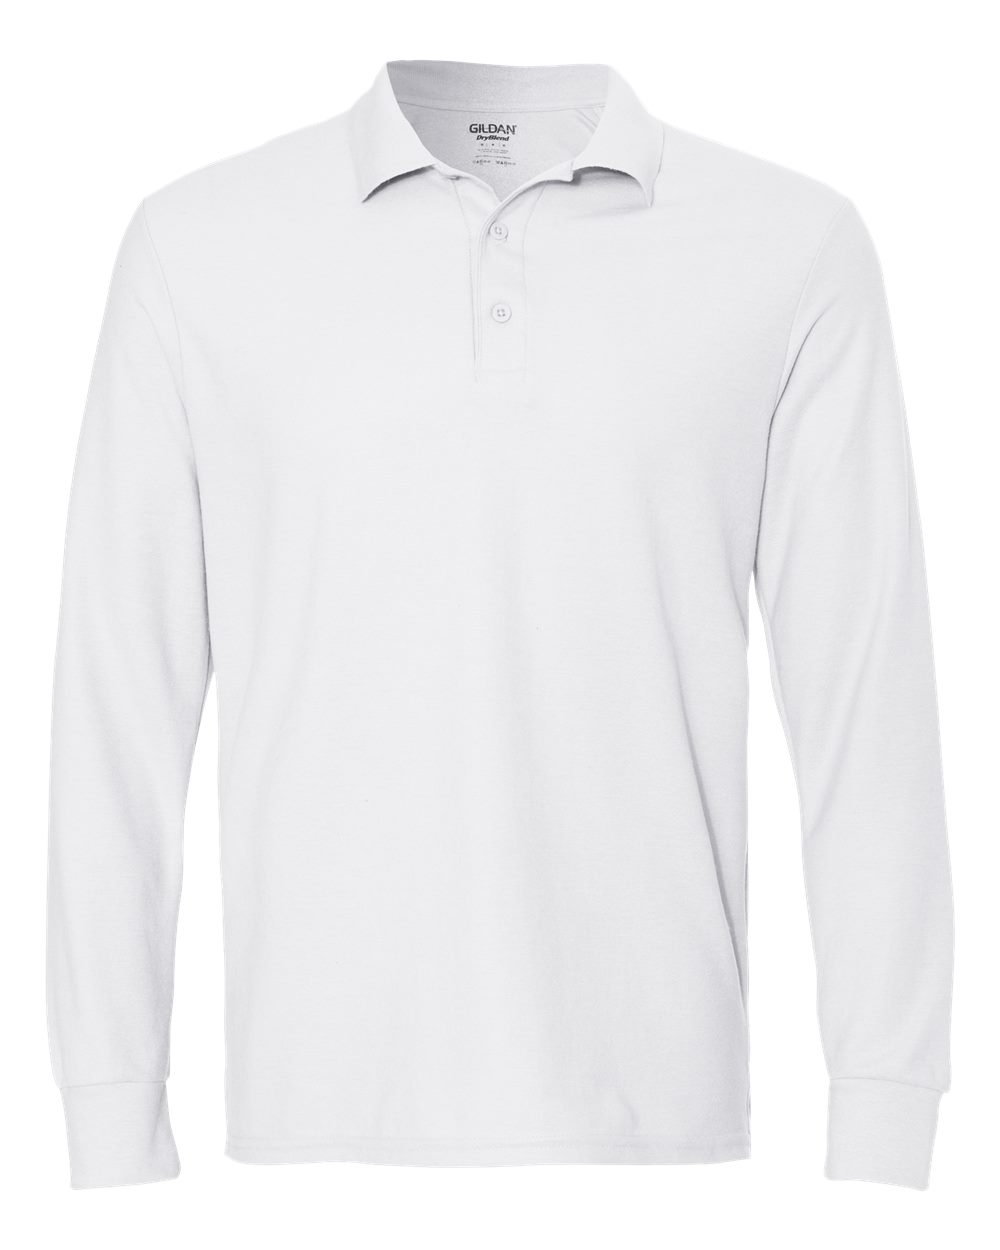 DryBlend® Double Piqu� Long Sleeve Sport Shirt-Gildan